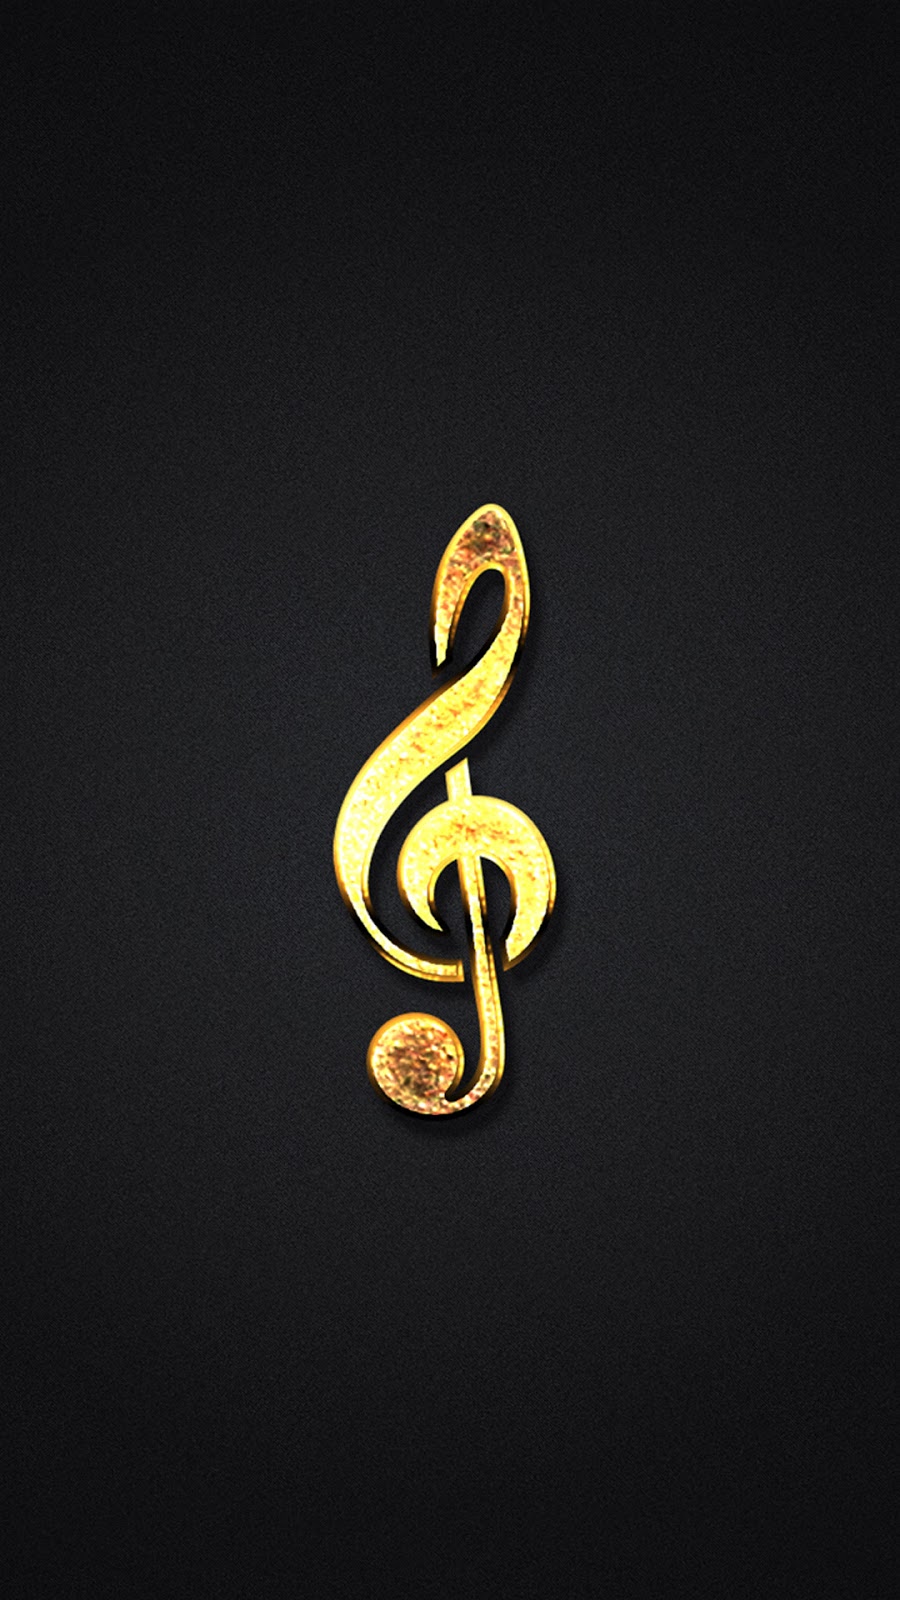 música iphone fondos de pantalla,amarillo,fuente,serpiente,metal,símbolo